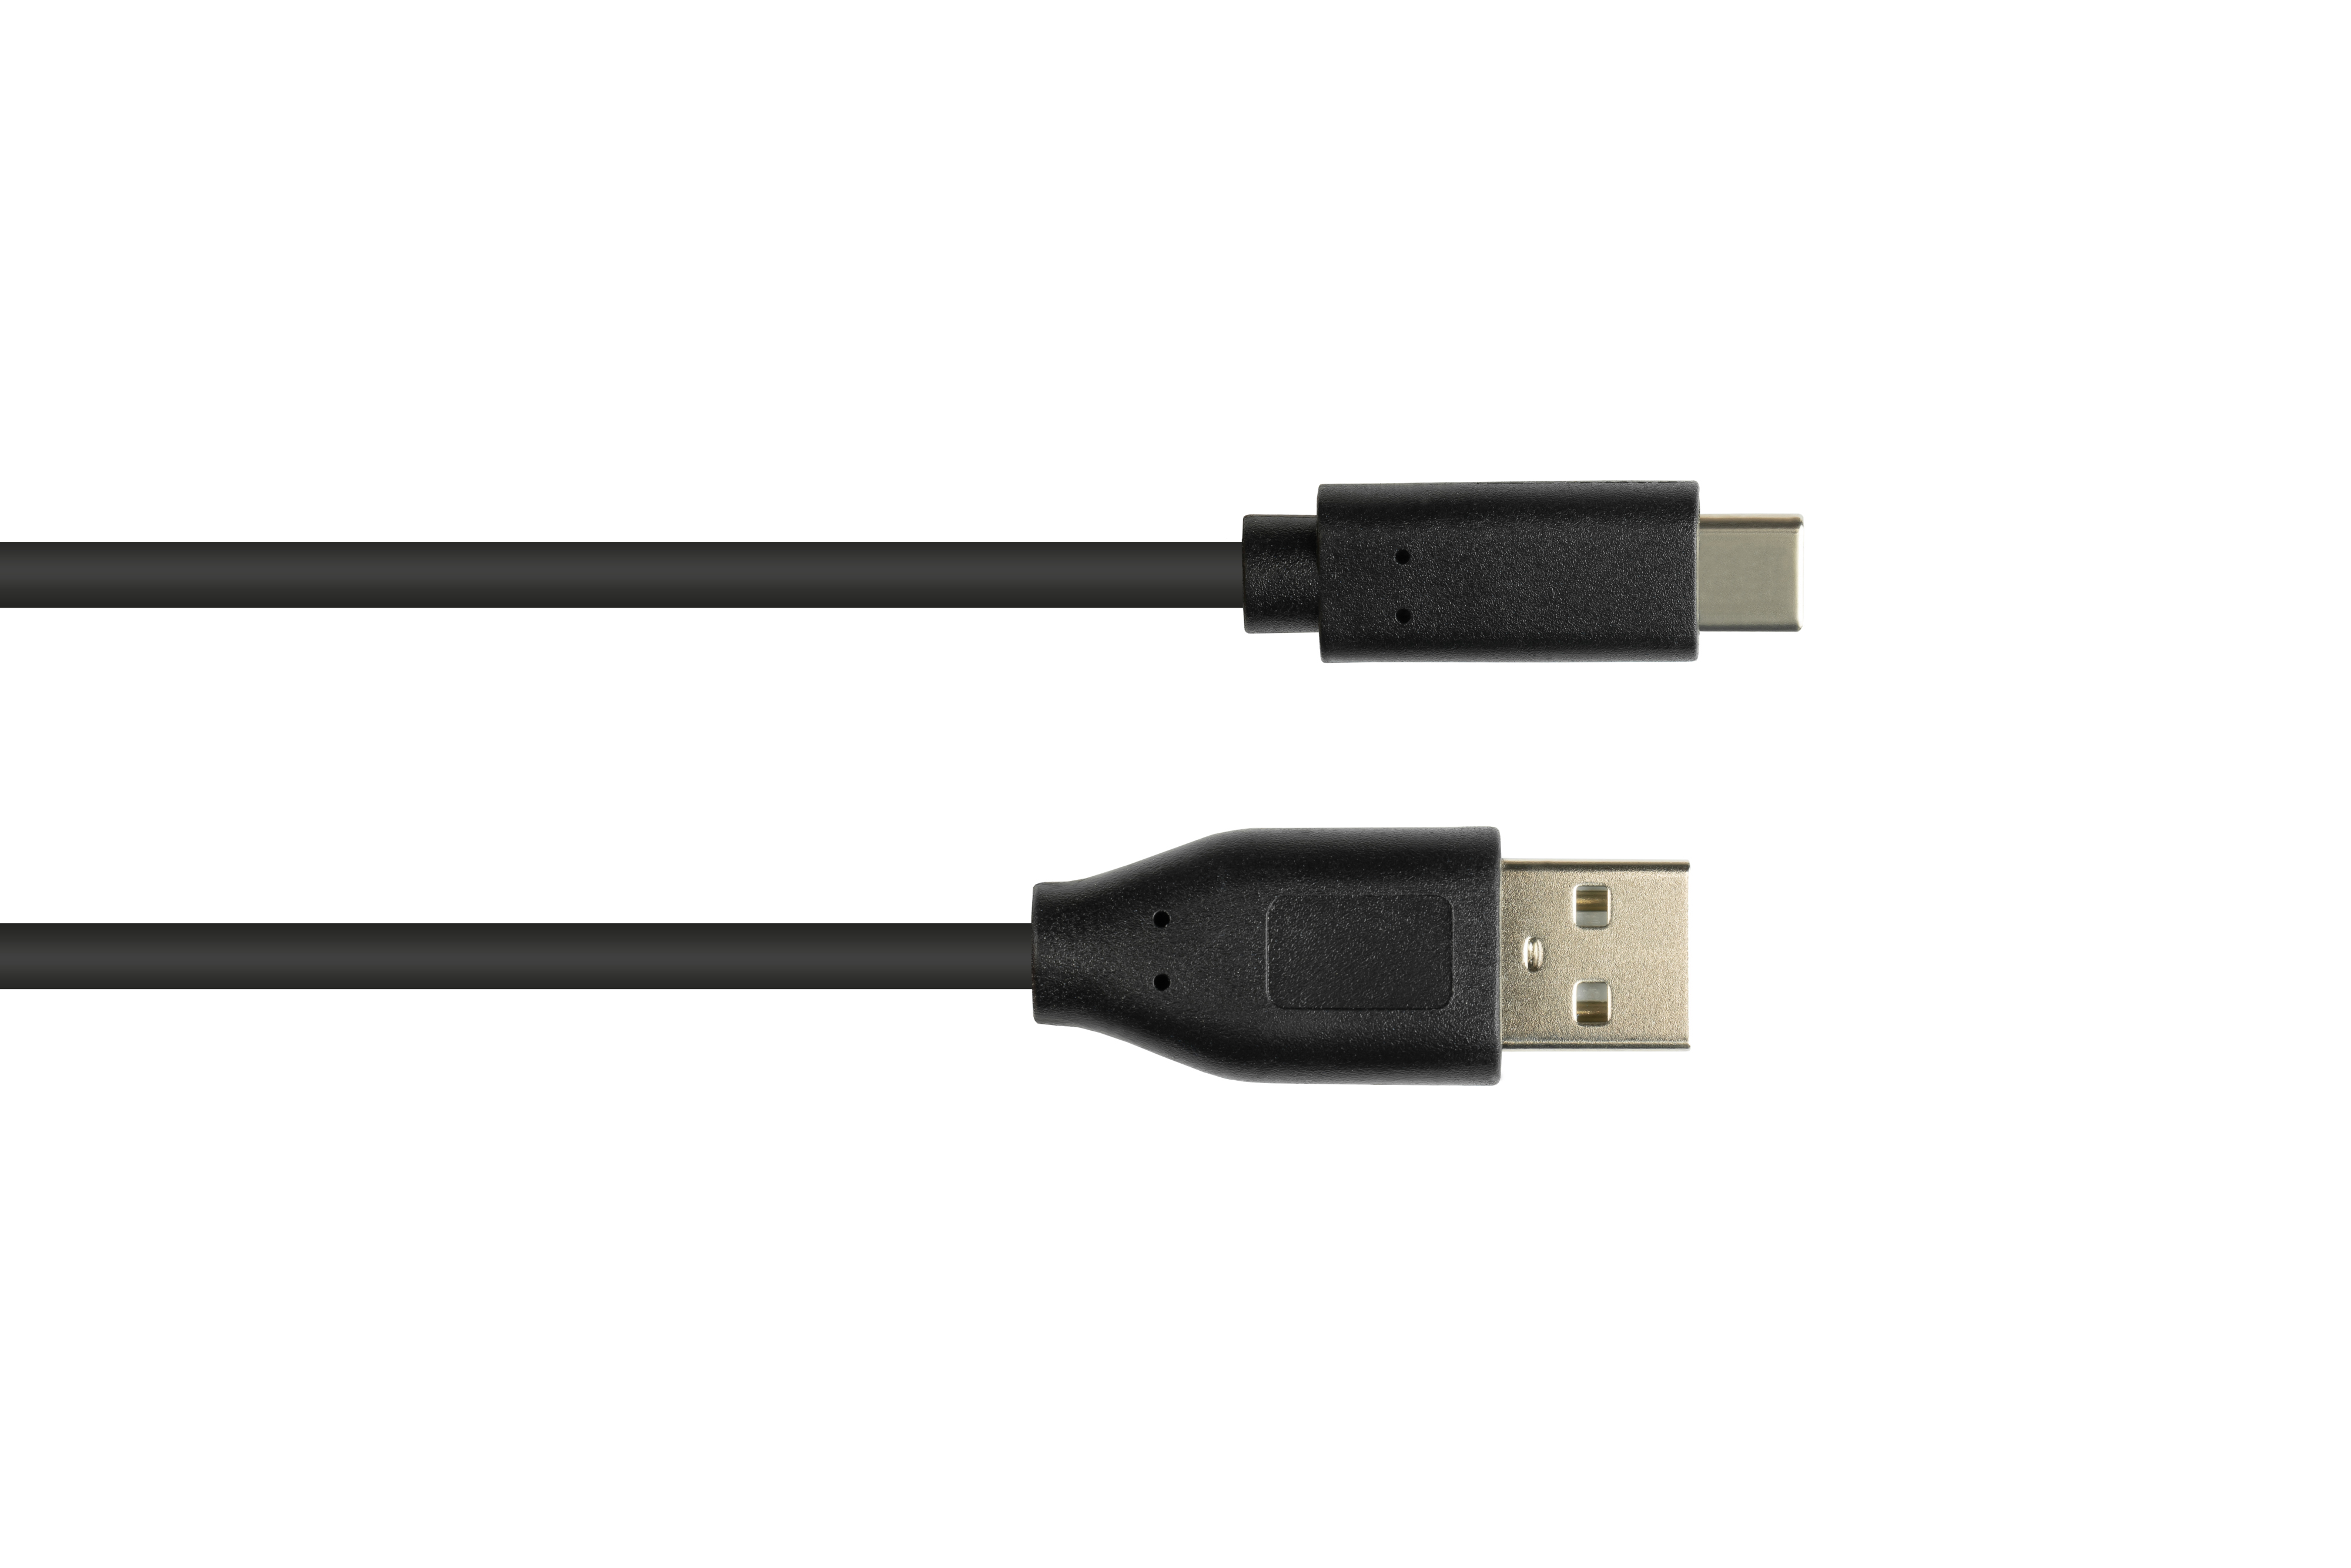 schwarz CONNECTIONS 2.0, 2.0 USB an Stecker CU, Stecker, A USB-C™ GOOD USB Anschlusskabel